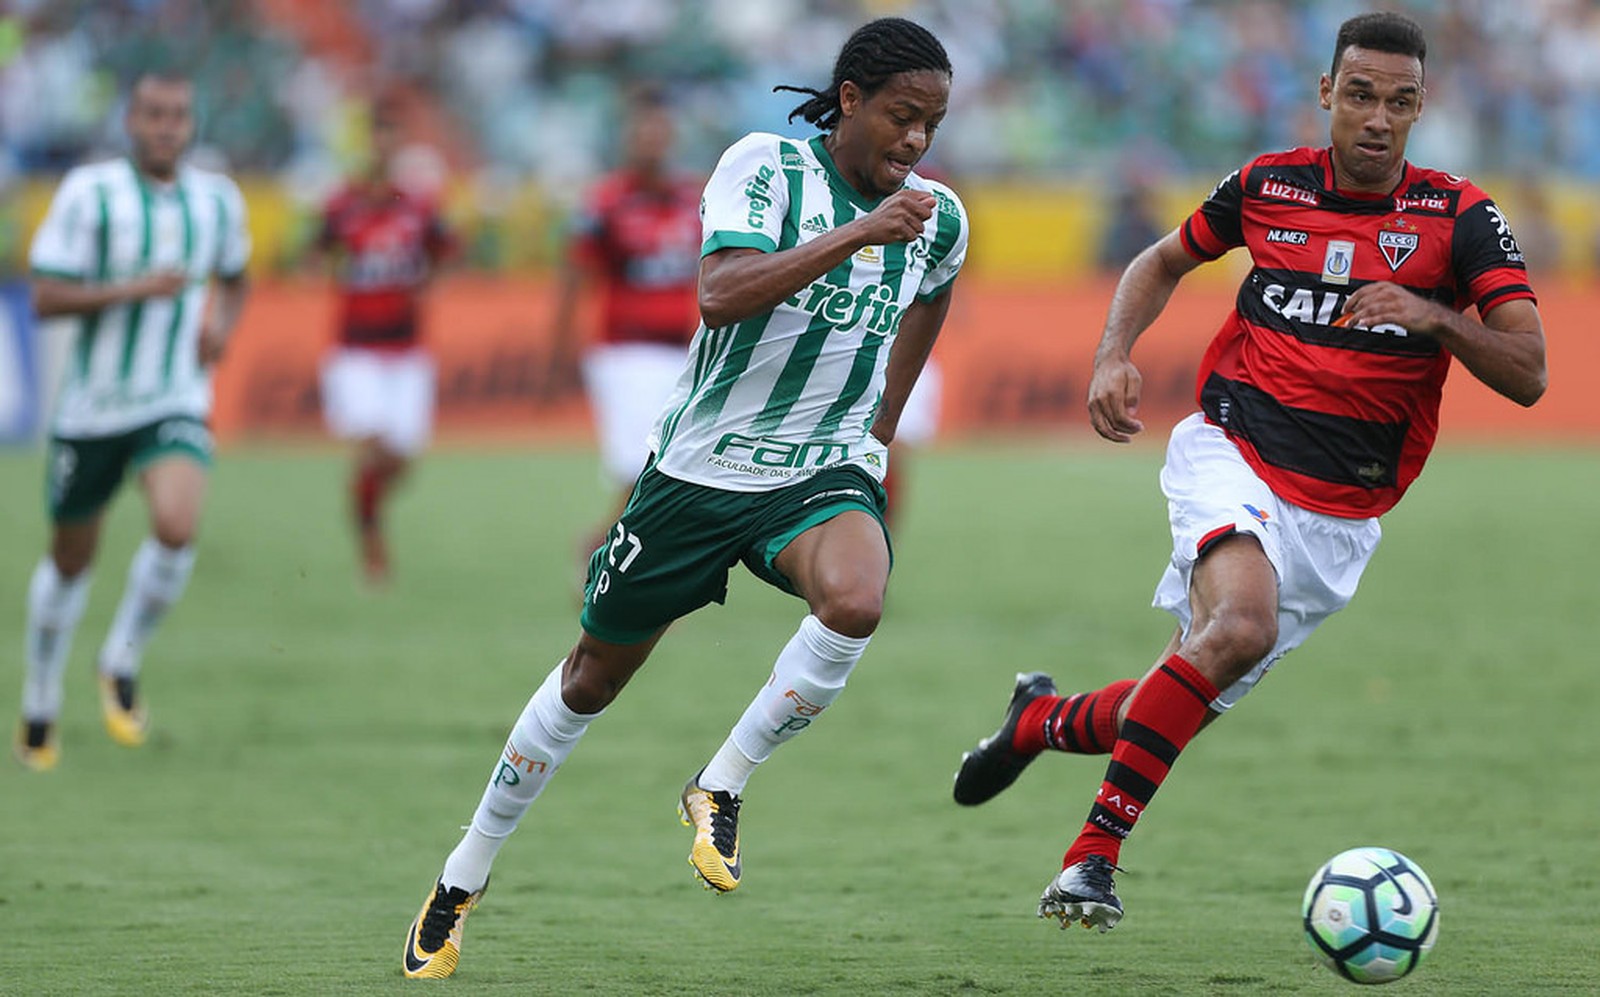 Keno é o segundo atleta a dar três ou mais assistências em um jogo no Brasileiro 2017